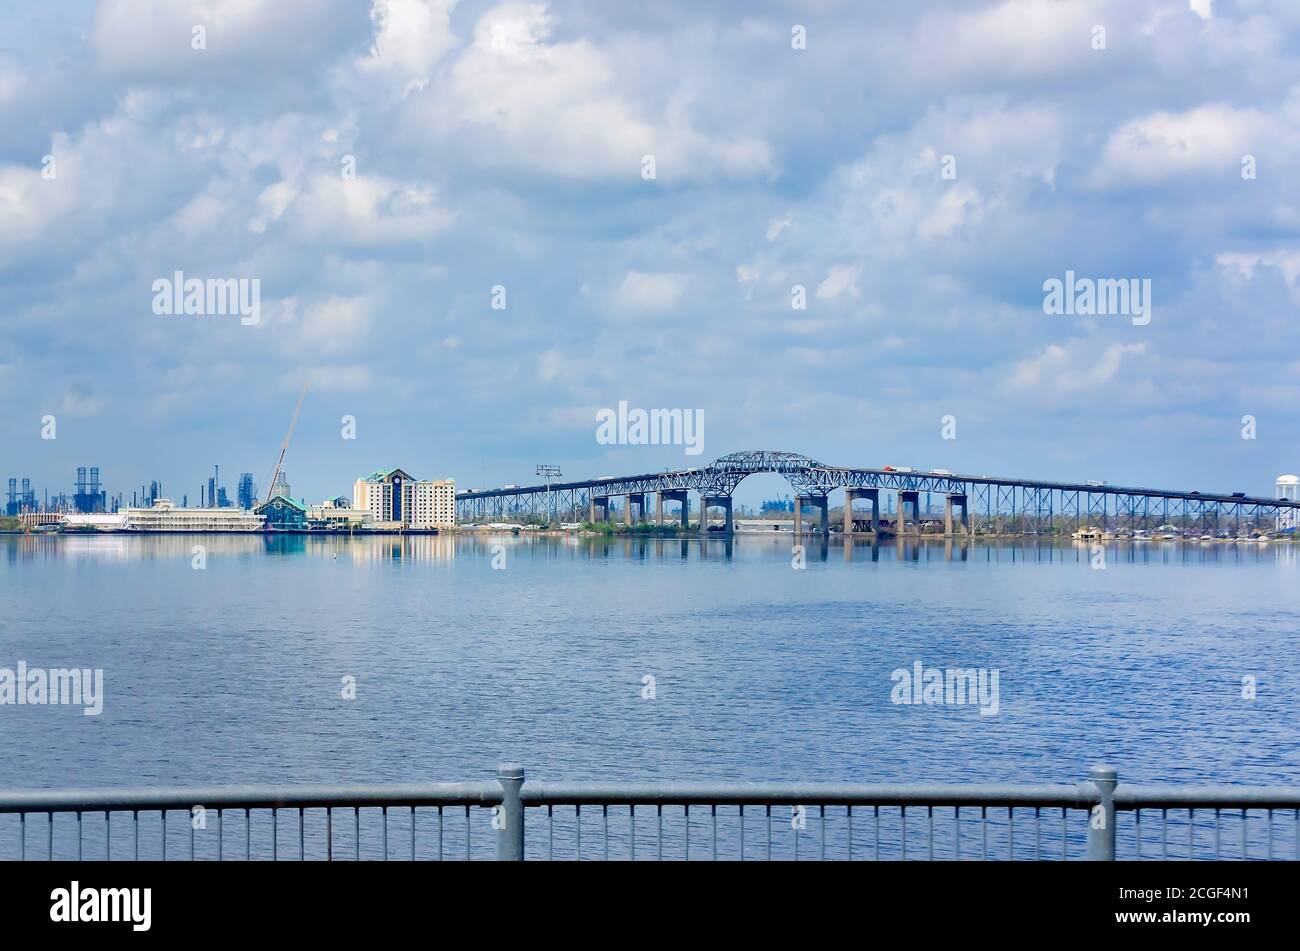 La circulation passe au-dessus du pont de la rivière Calcasieu, officiellement nommé pont de la Seconde Guerre mondiale du Mémorial de la Louisiane, le 9 septembre 2020, à Lake Charles, en Louisiane. Banque D'Images